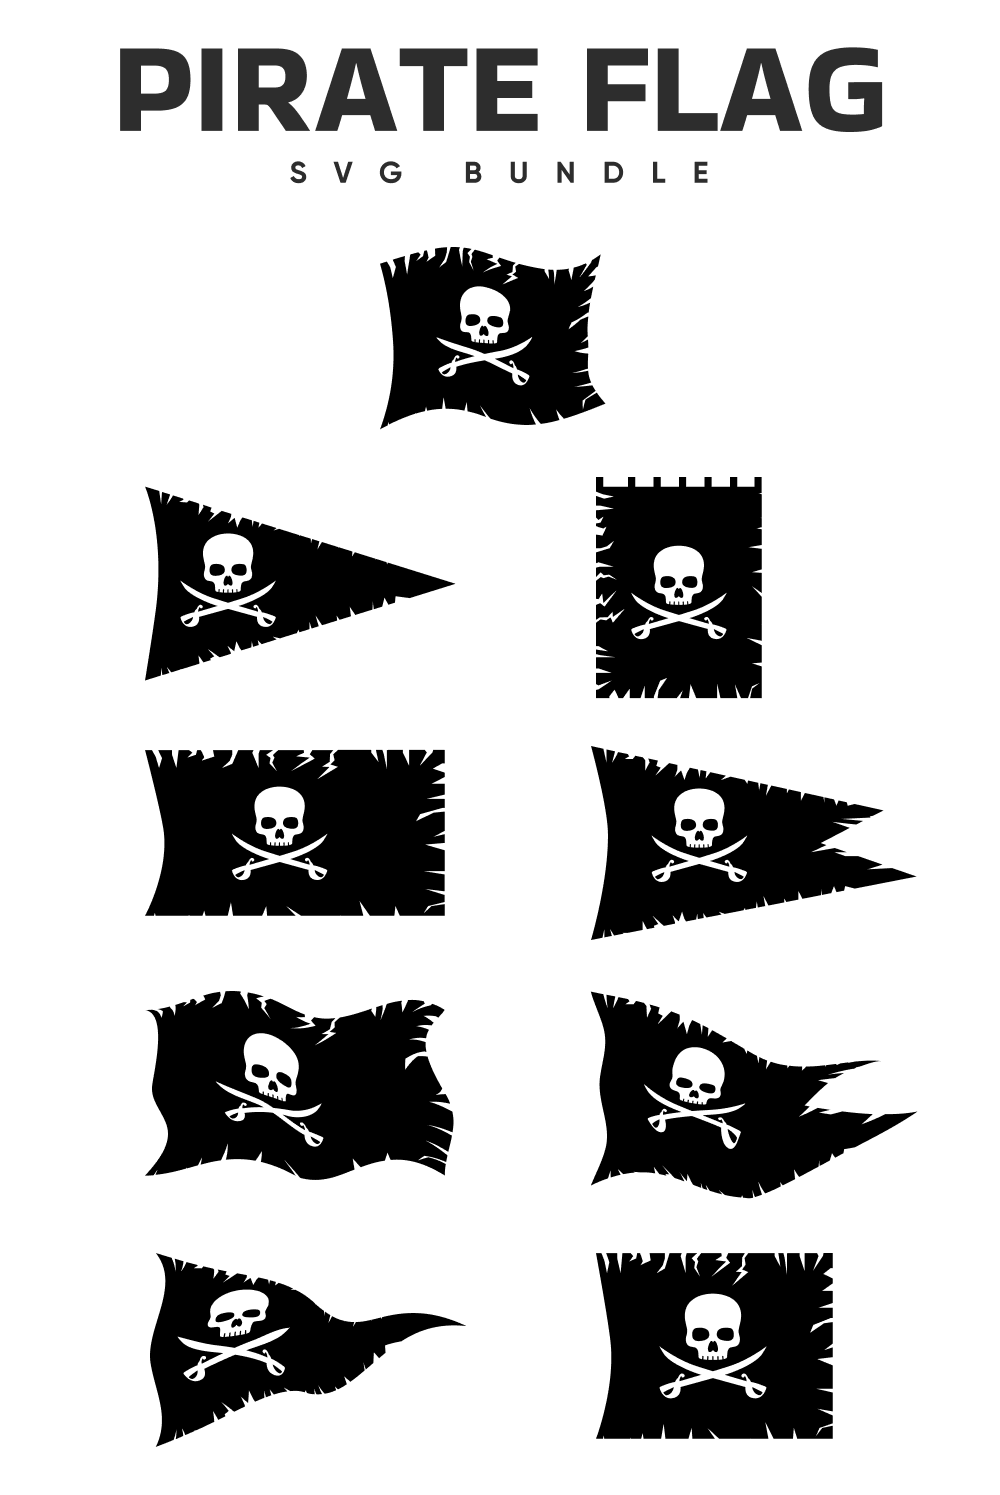 Pirate flag svg bundle of pinterest.